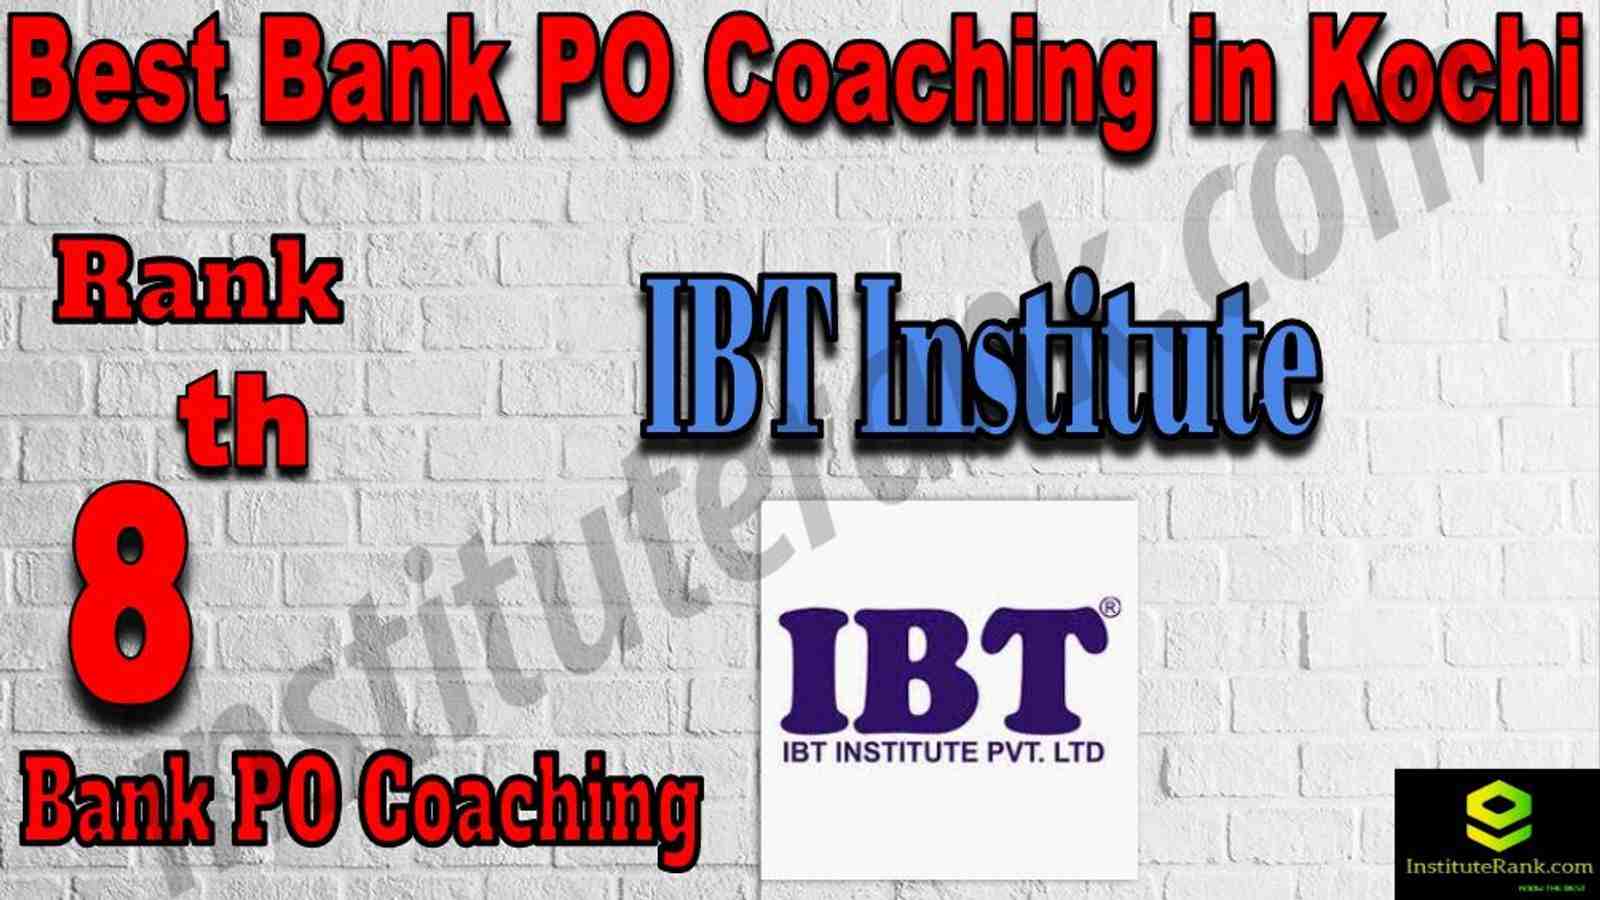 8th Best Bank PO Coaching in Kochi